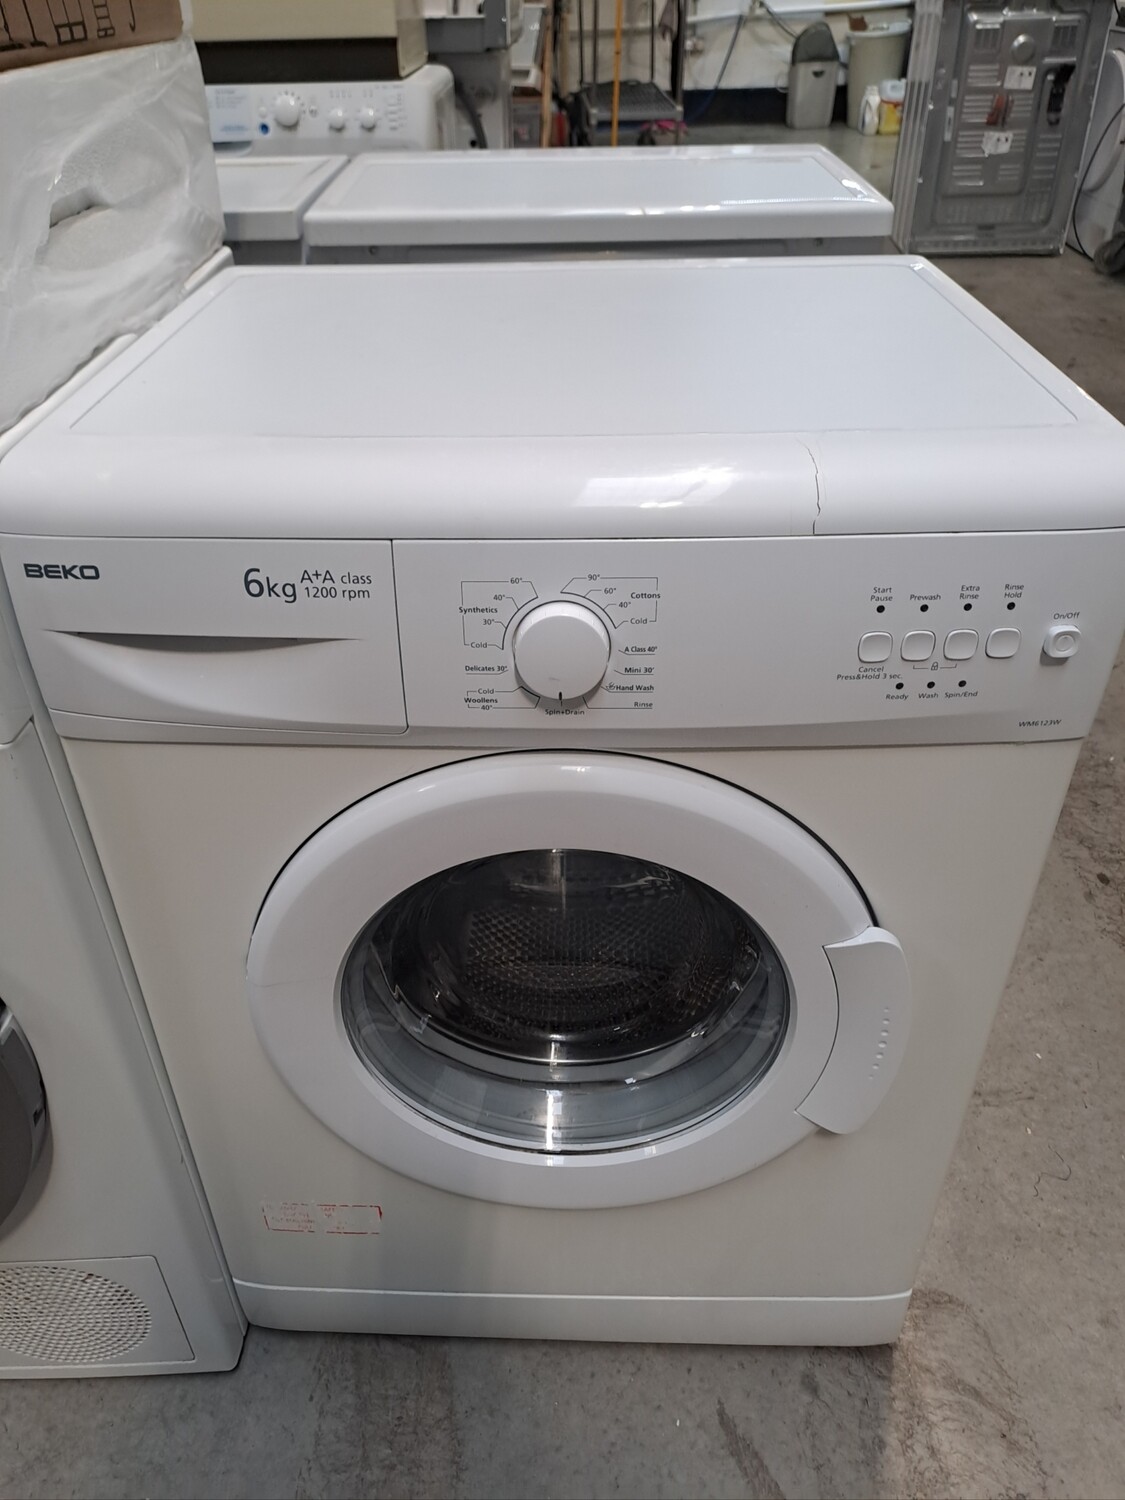 Beko WM6123W 6kg Load 1200 Spin Washing Machine - White - Refurbished - 3 Month Guarantee